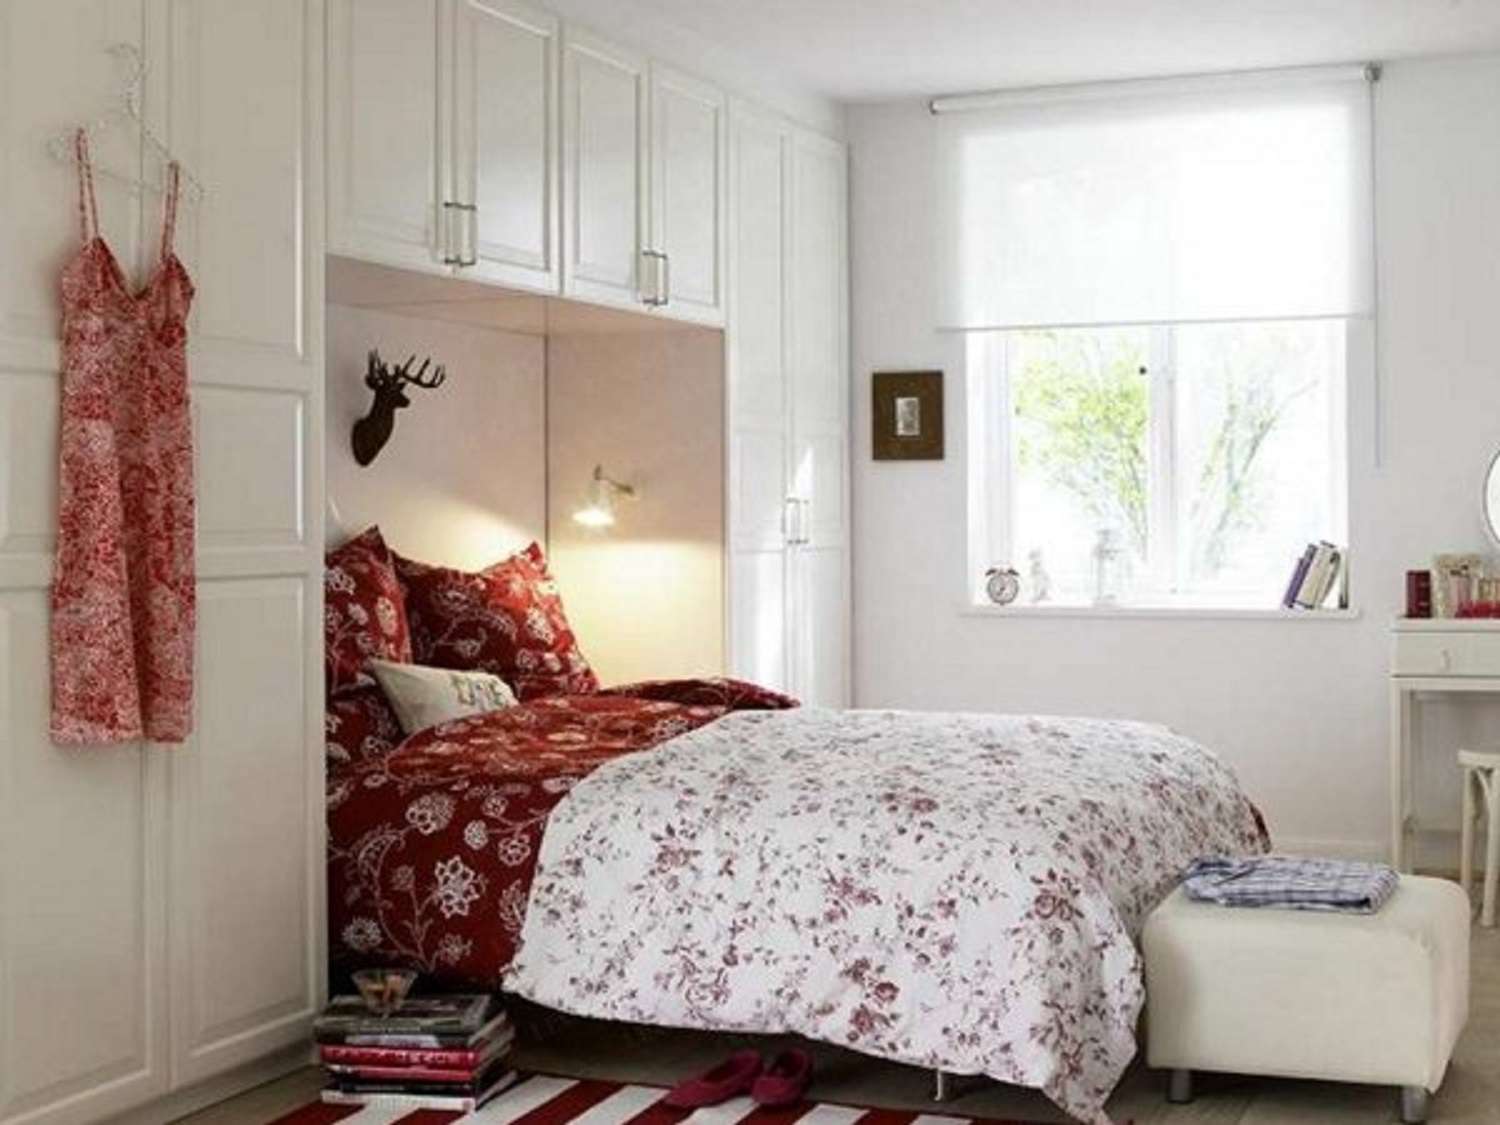 Dormitorio rojo y blanco.